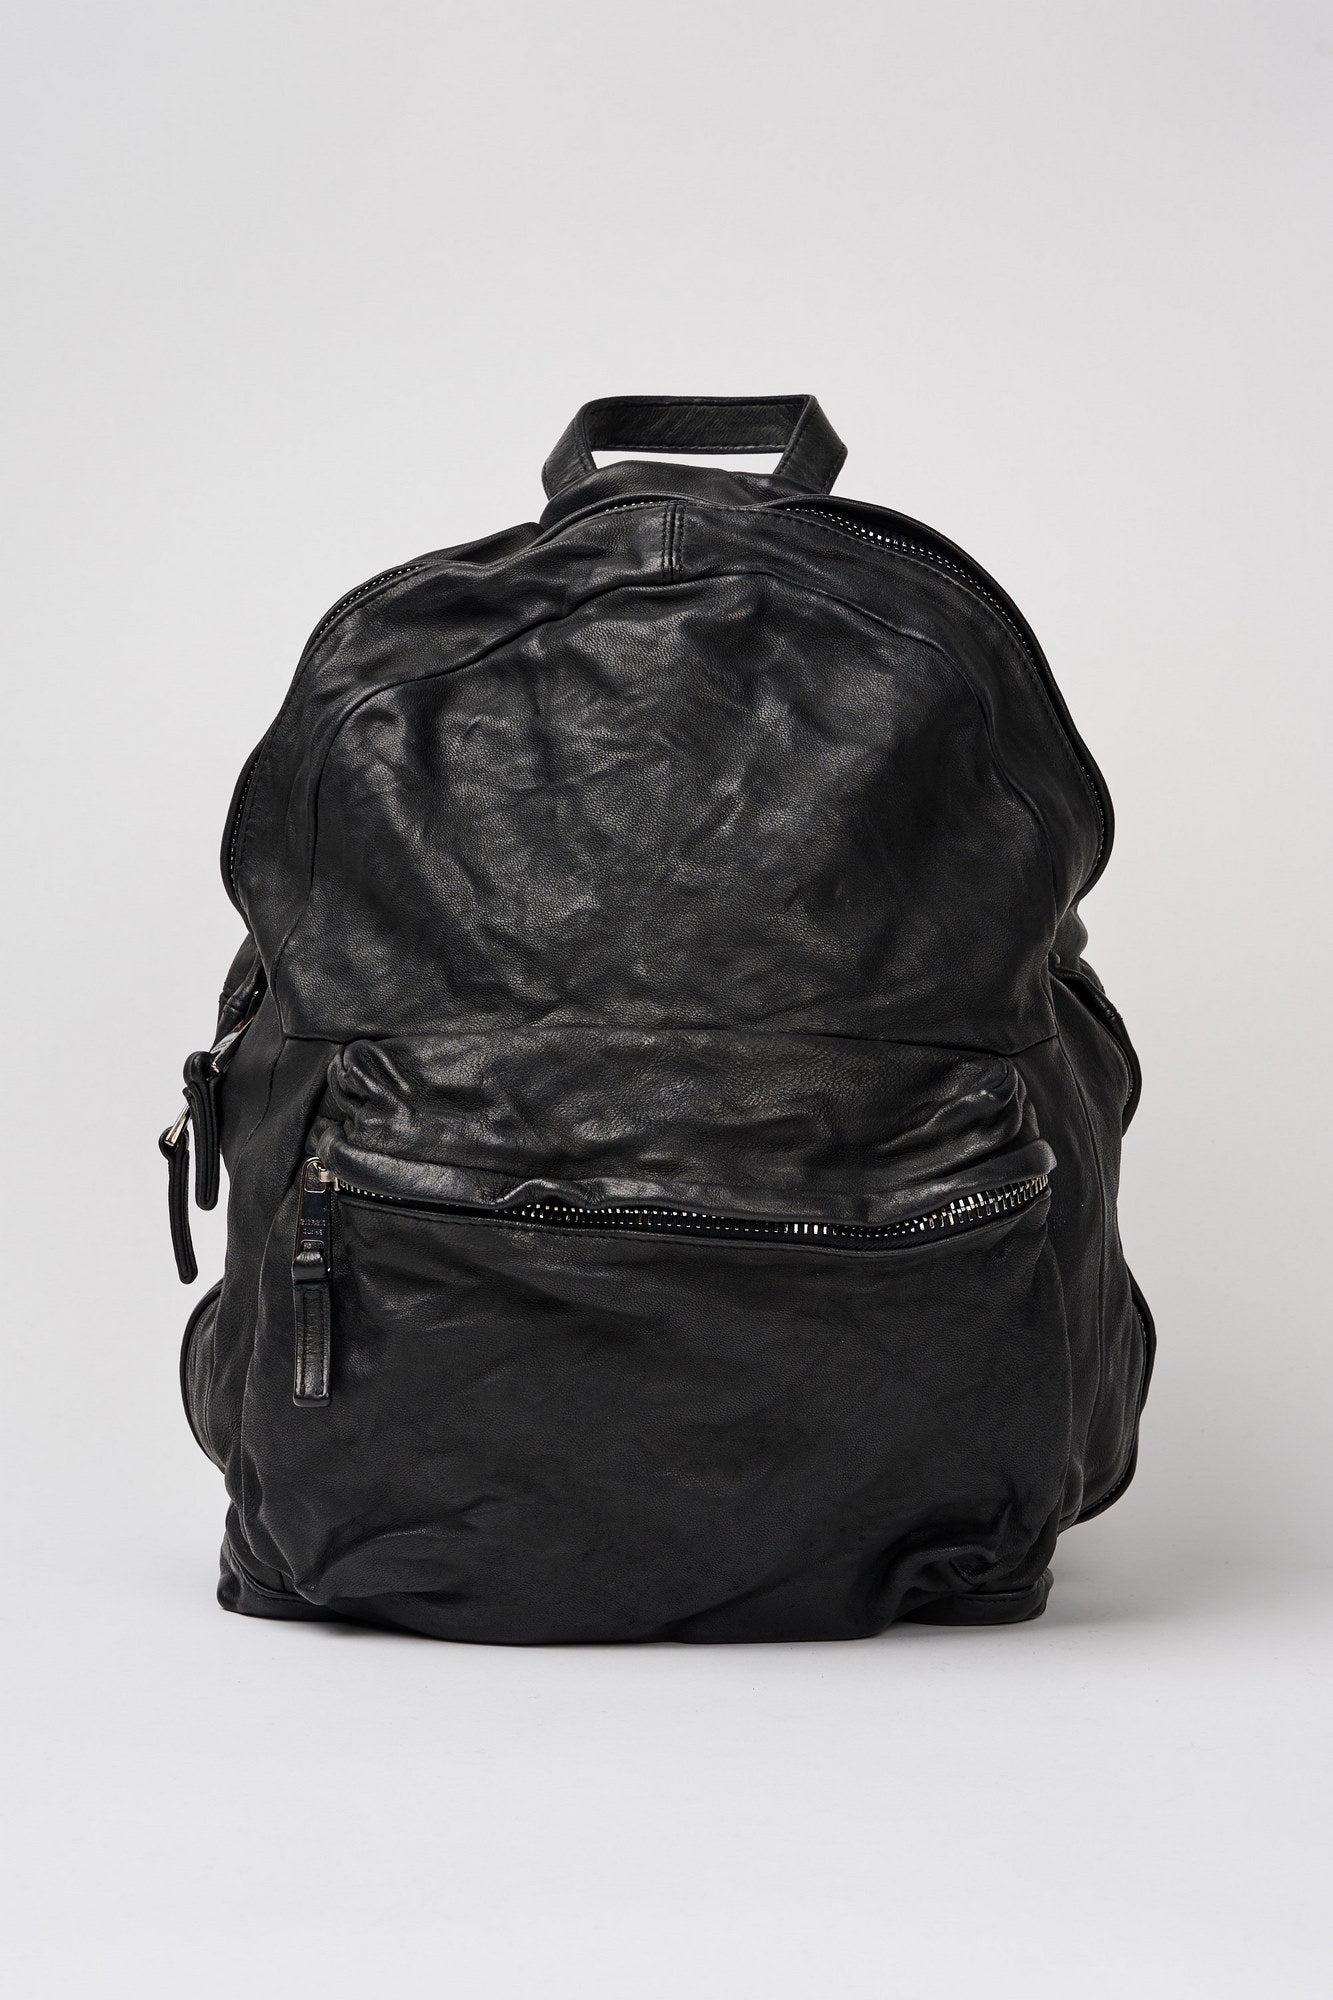 Giorgio Brato Backpack 6520 Leather Black-1